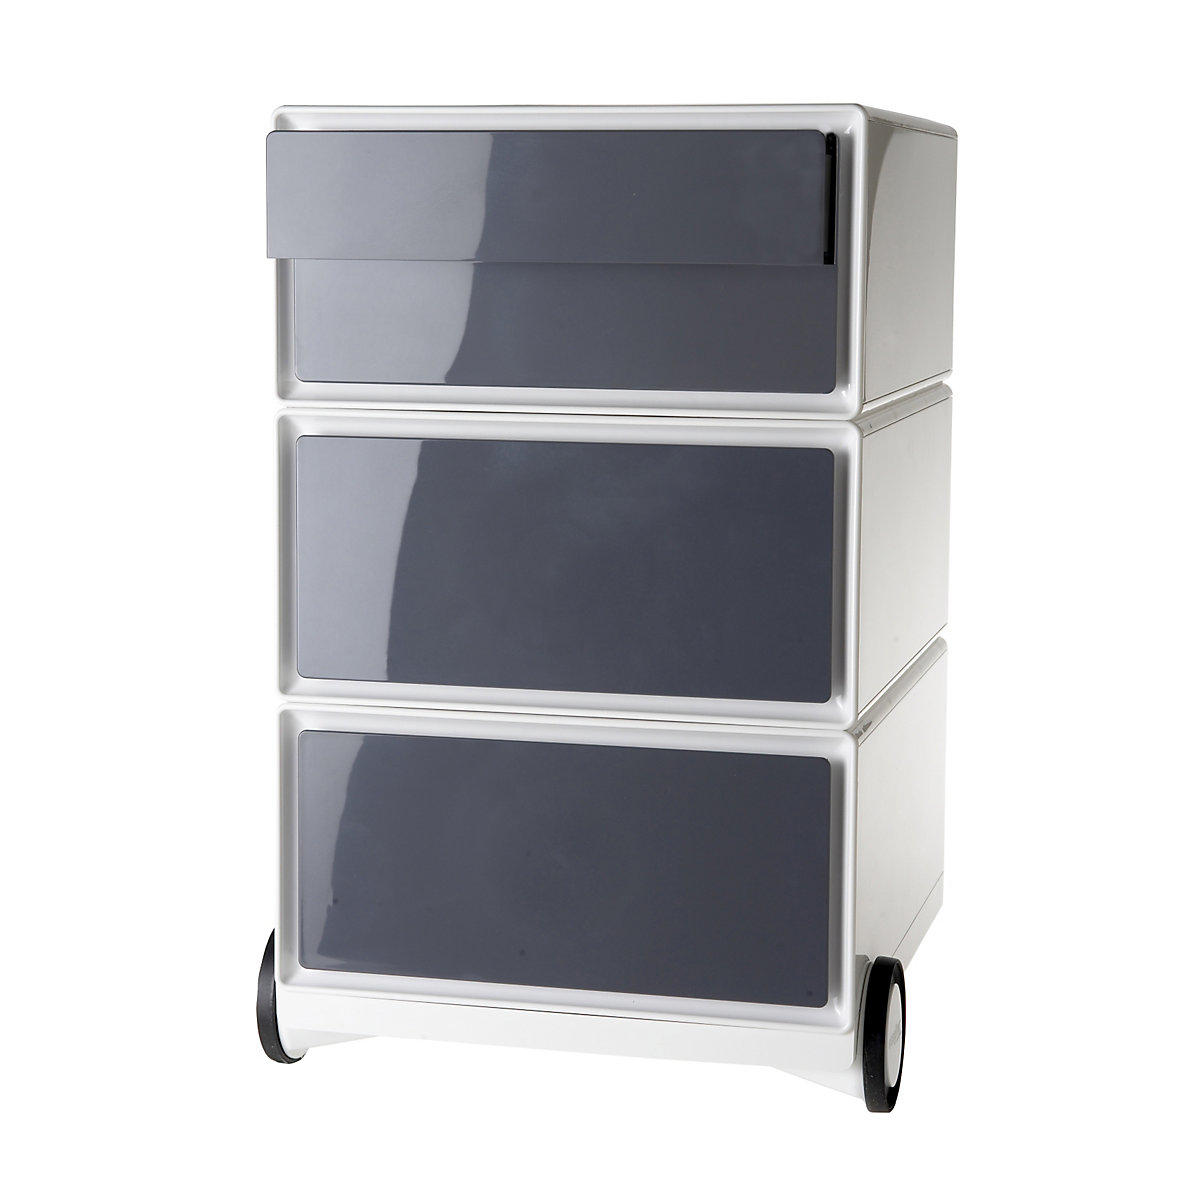 Pomični predalnik easyBox® – Paperflow, 2 predala, 2 nižja predala, bel / antraciten-14